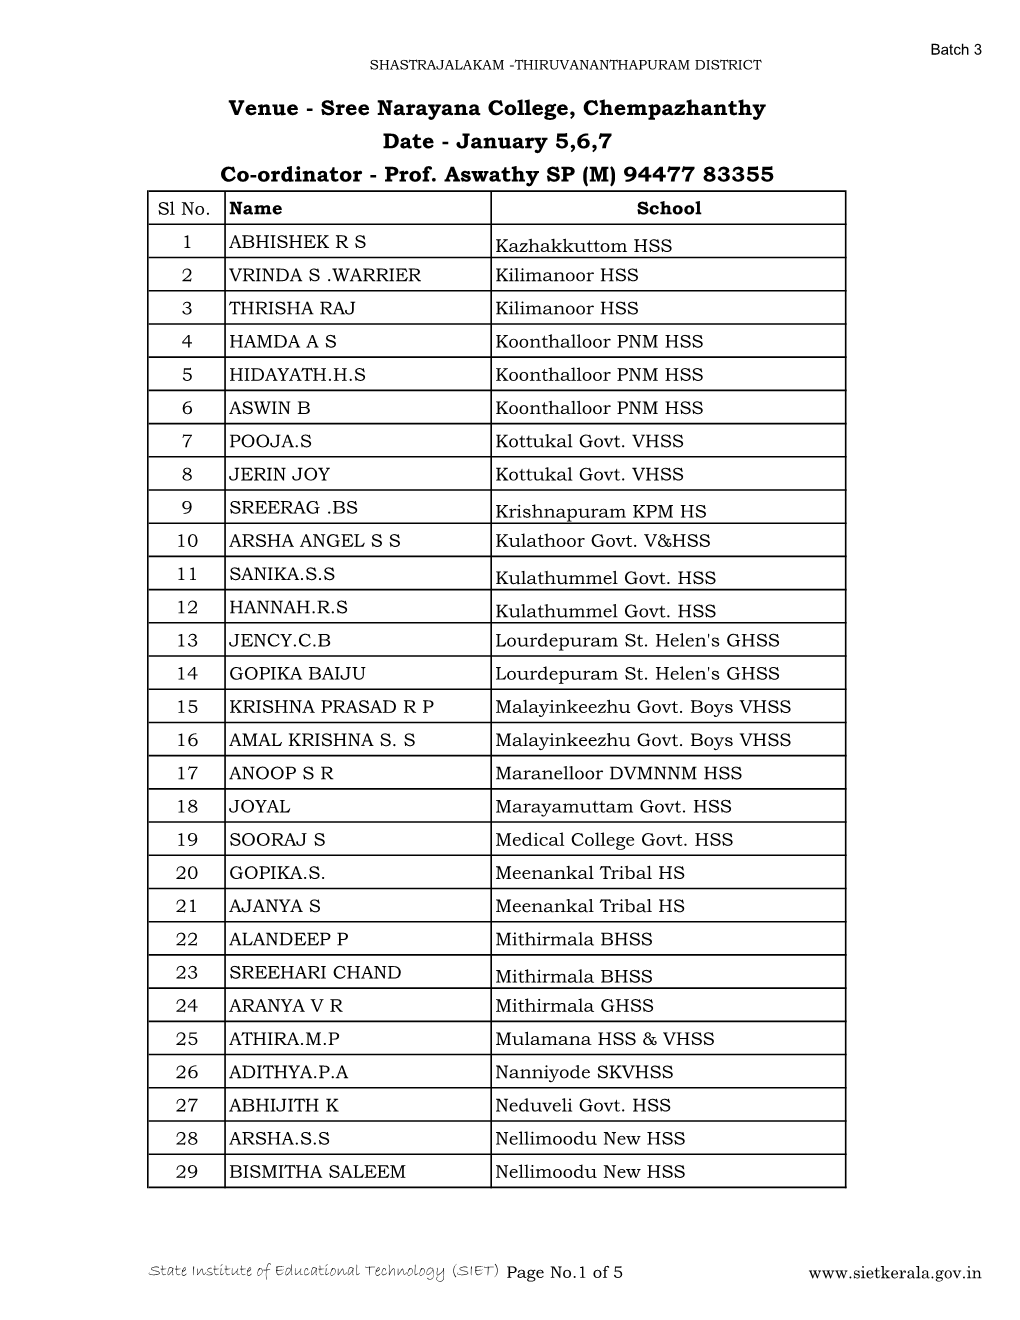 Sree Narayana College, Chempazhanthy Date - January 5,6,7 Co-Ordinator - Prof